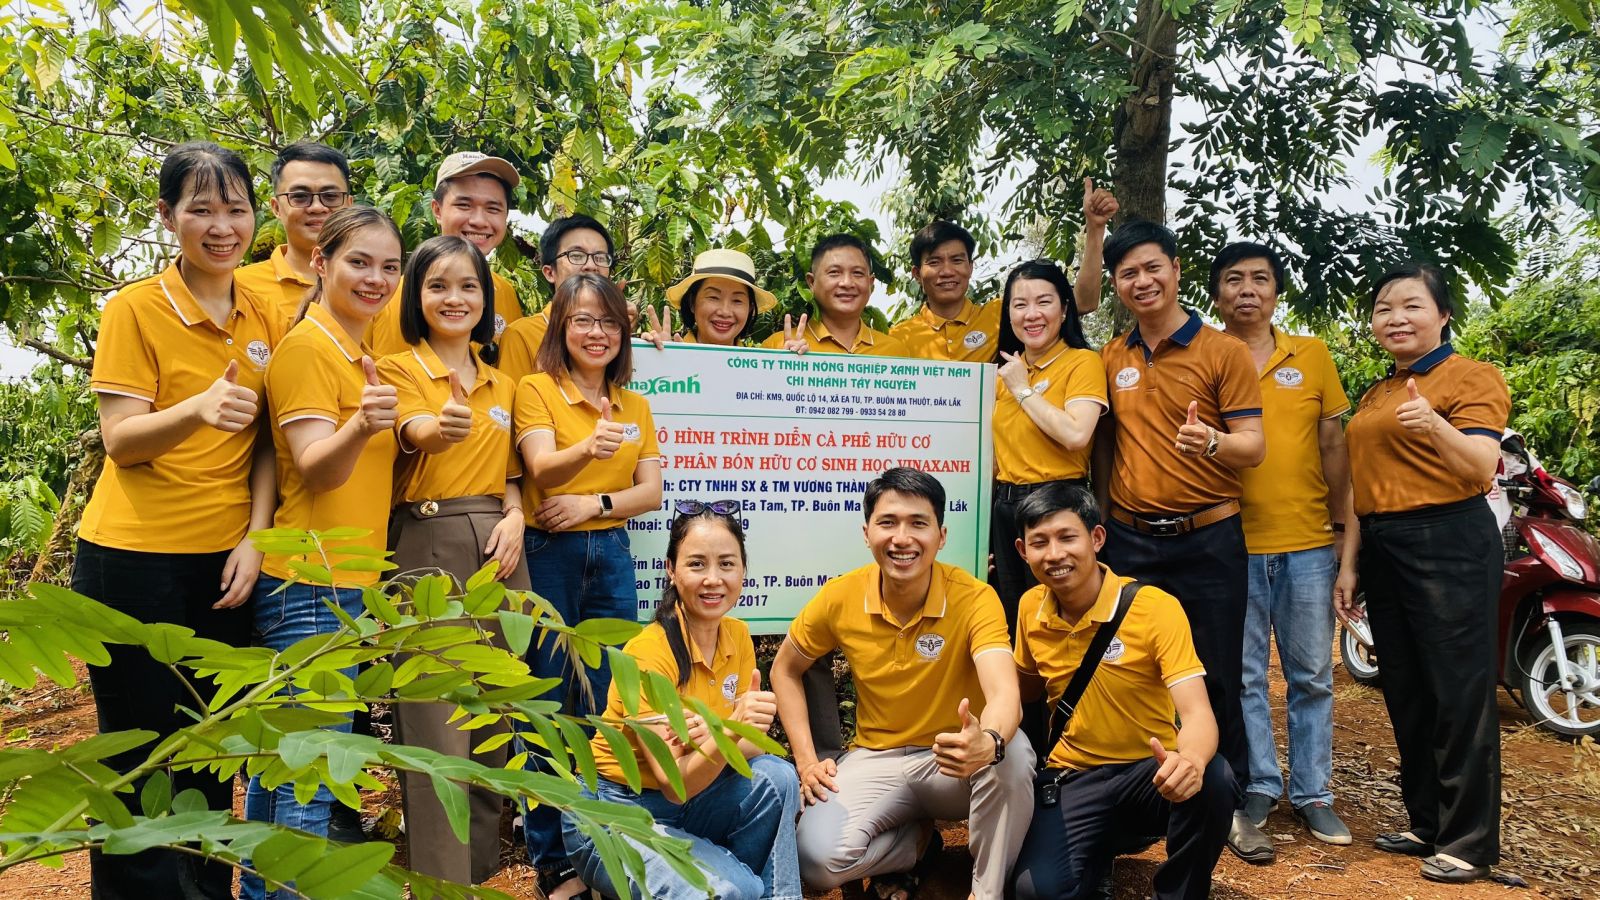 Đắk Lắk: Chủ thể OCOP với khát vọng nâng tầm cà phê Việt